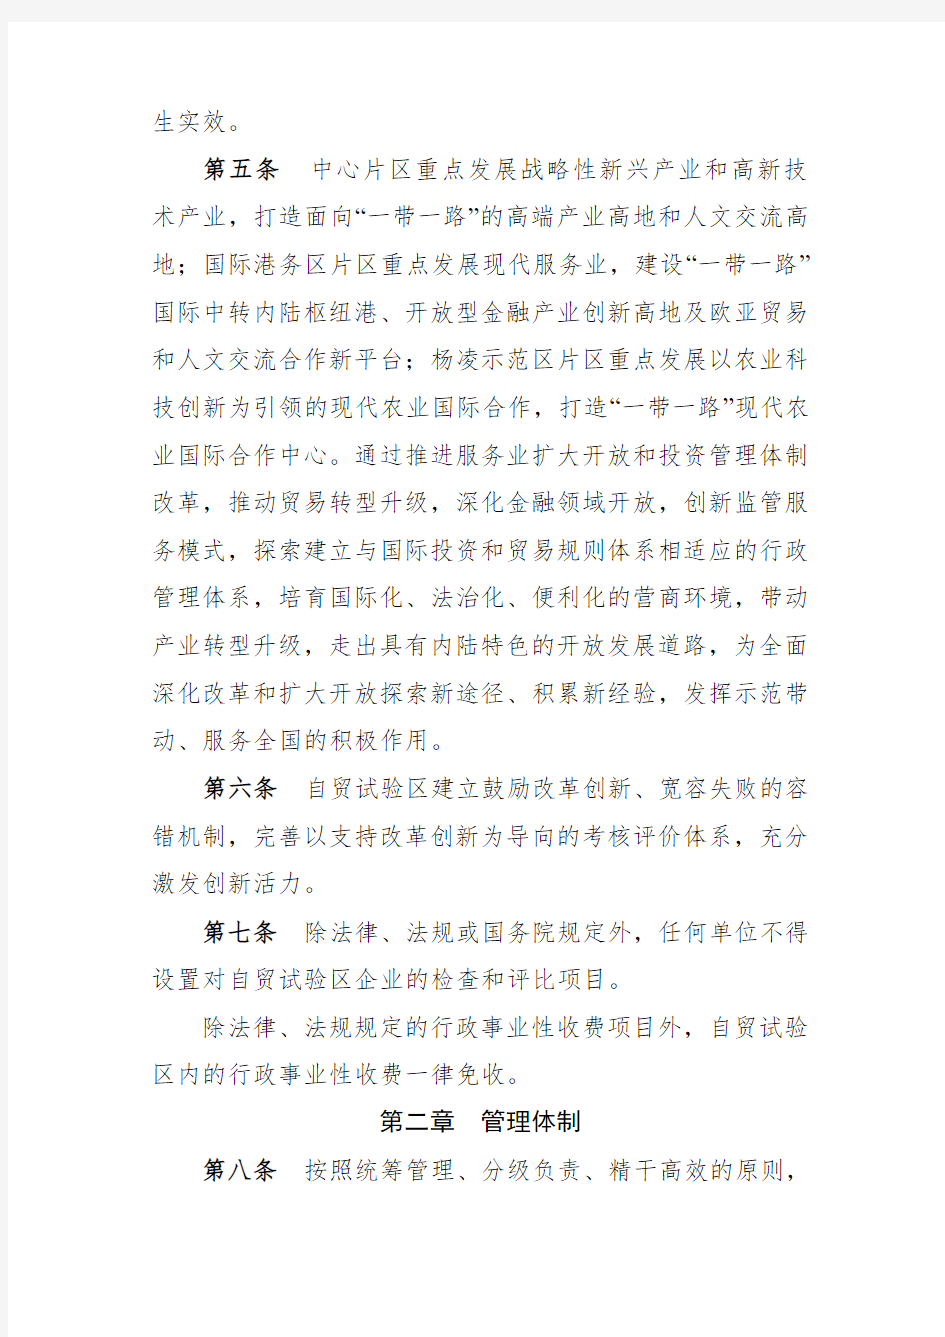 中国陕西自由贸易试验区管理办法